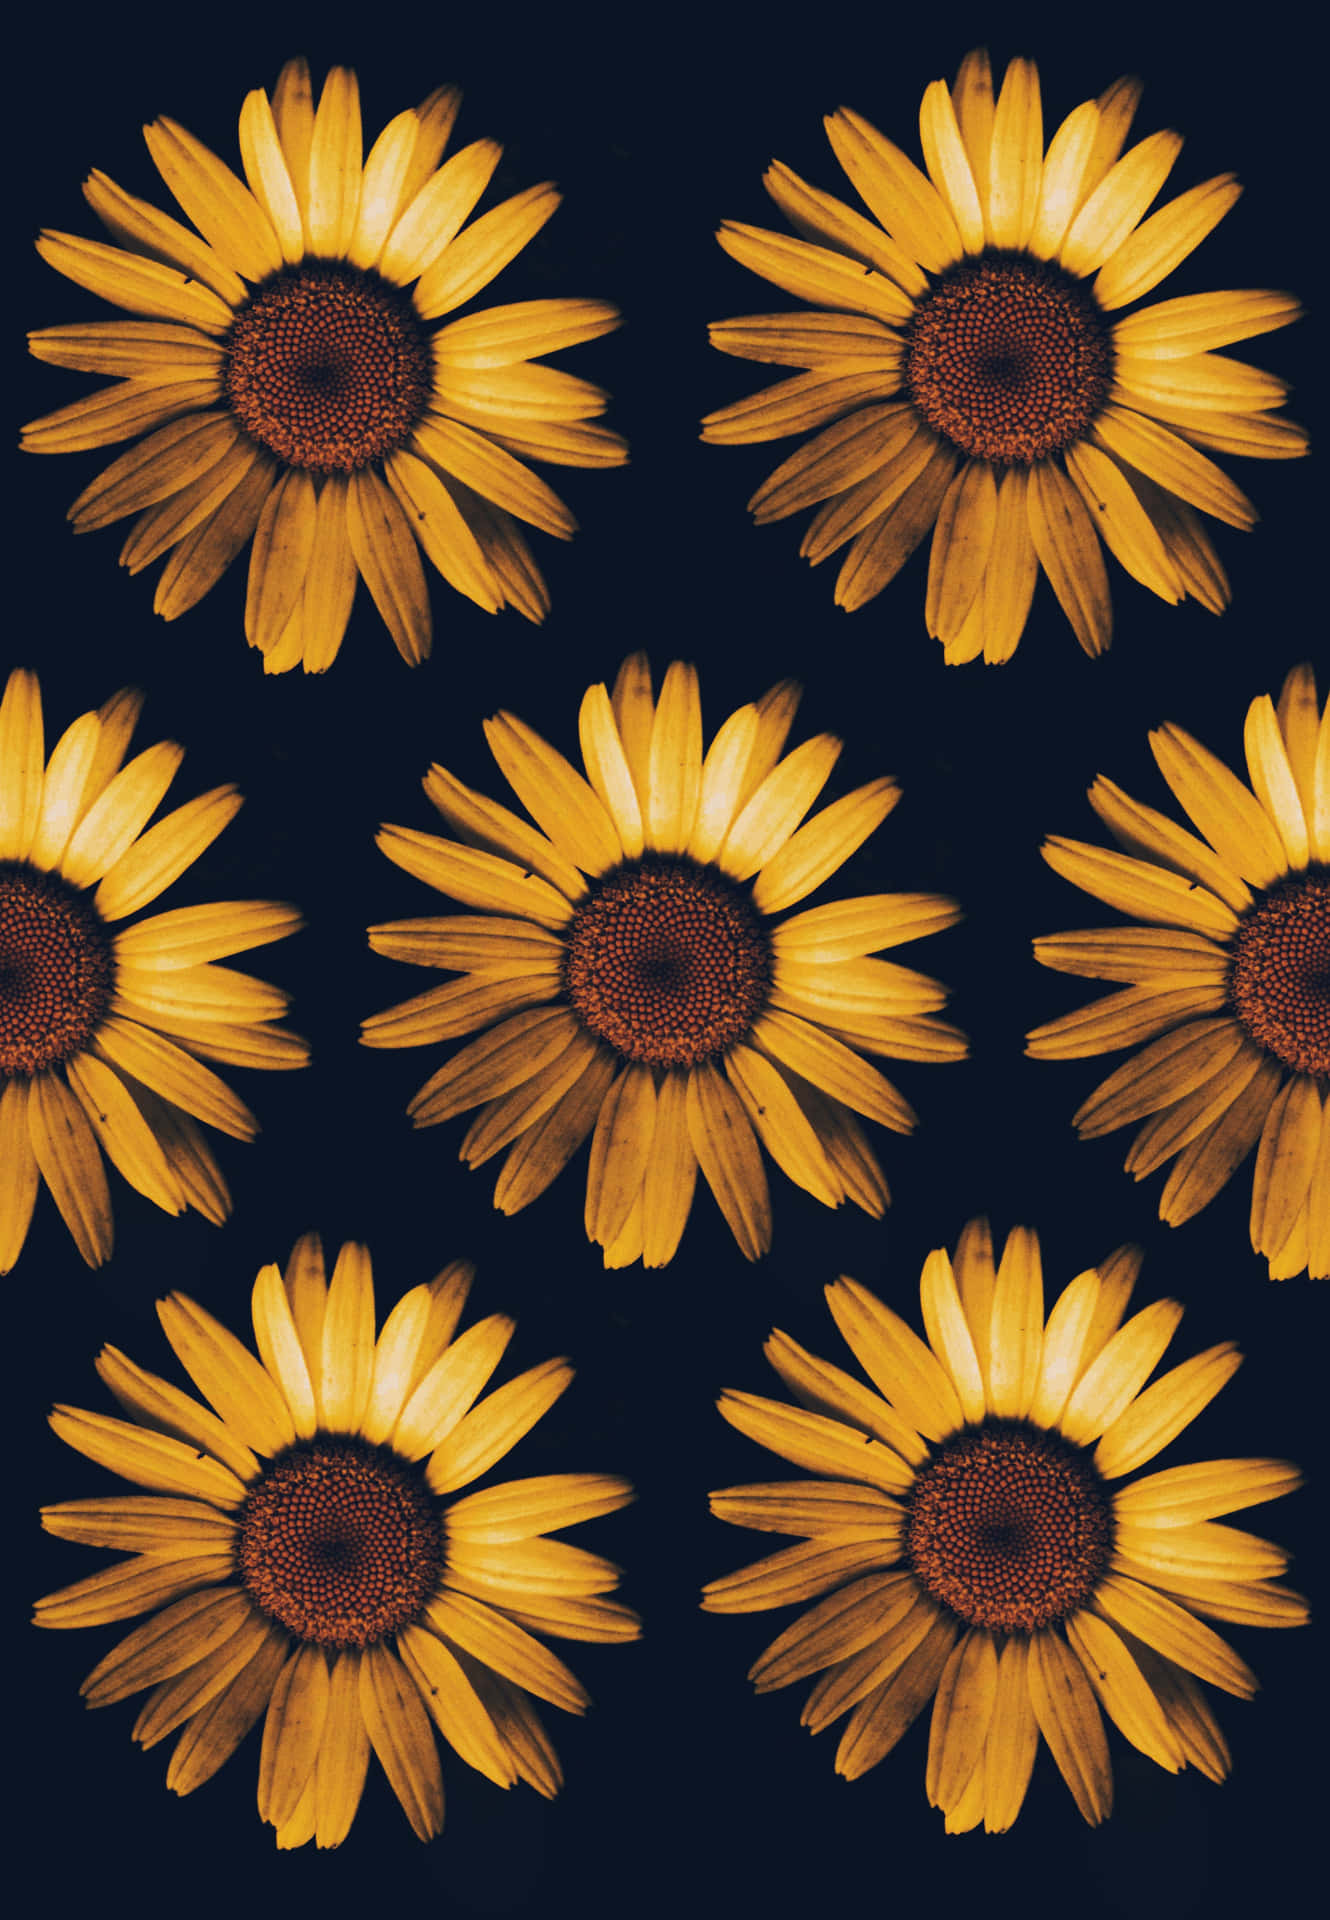 sunflowers on a dark background